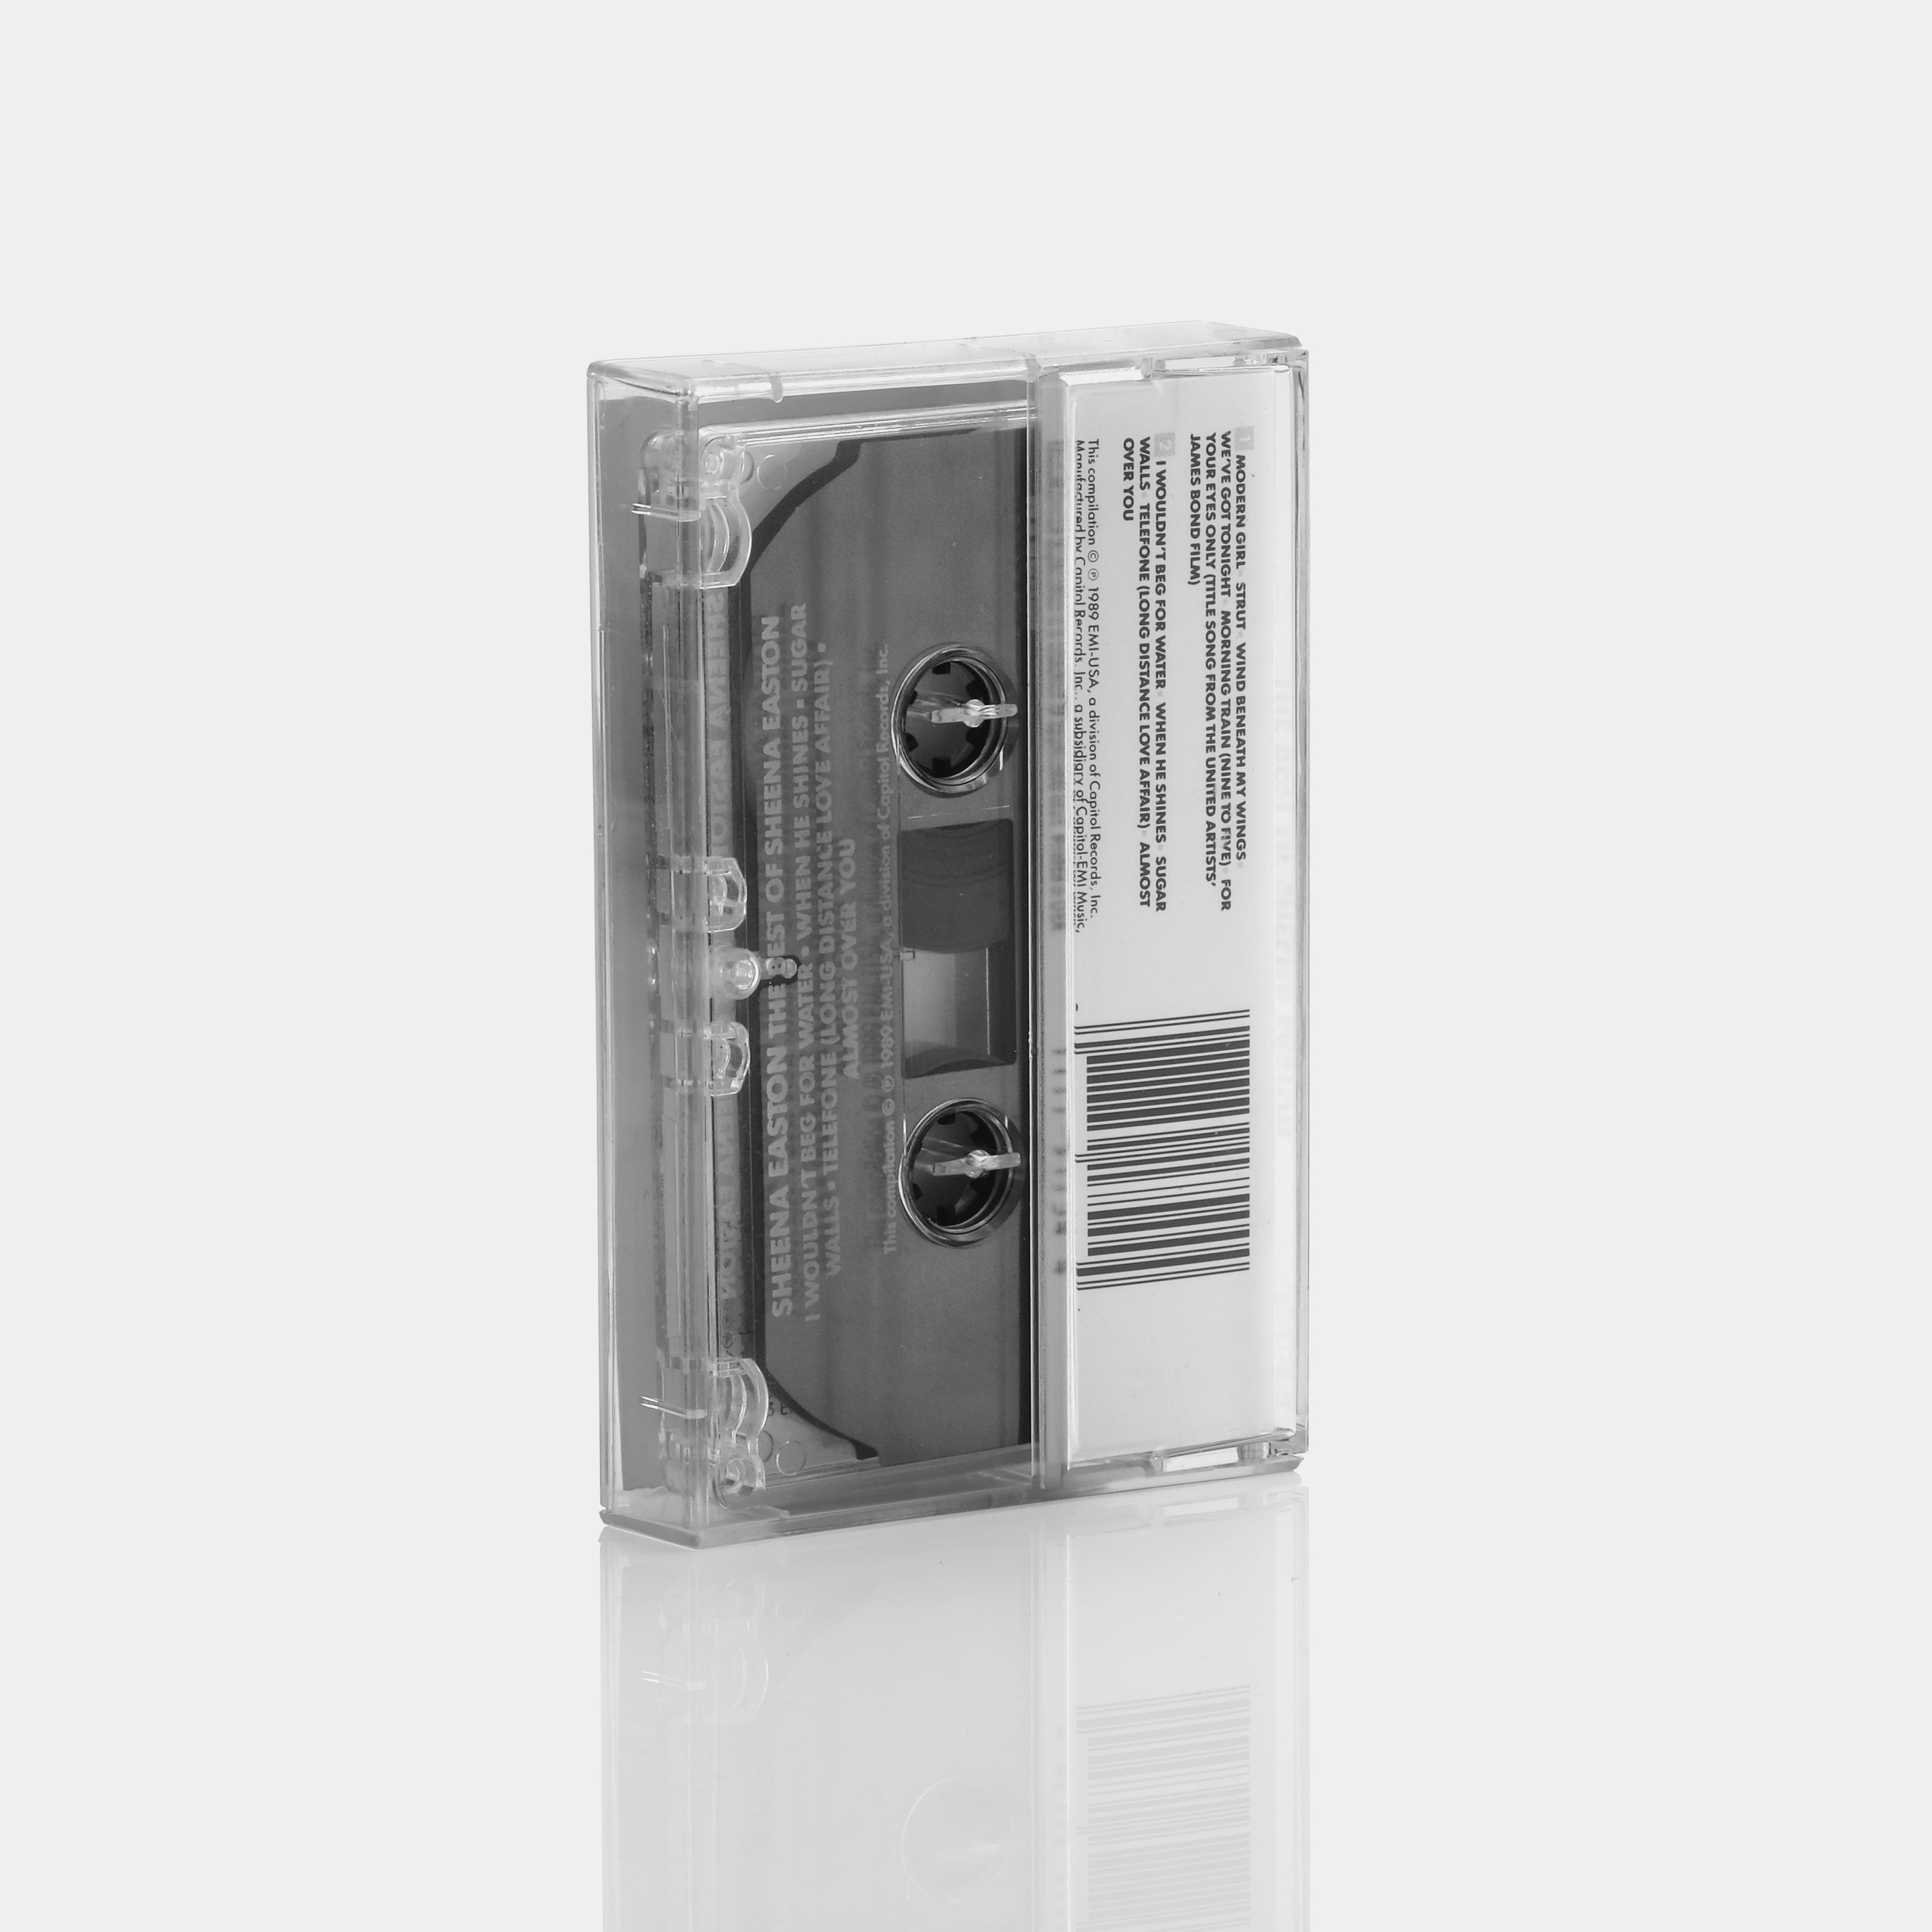 Sheena Easton - The Best Of Sheena Easton Cassette Tape